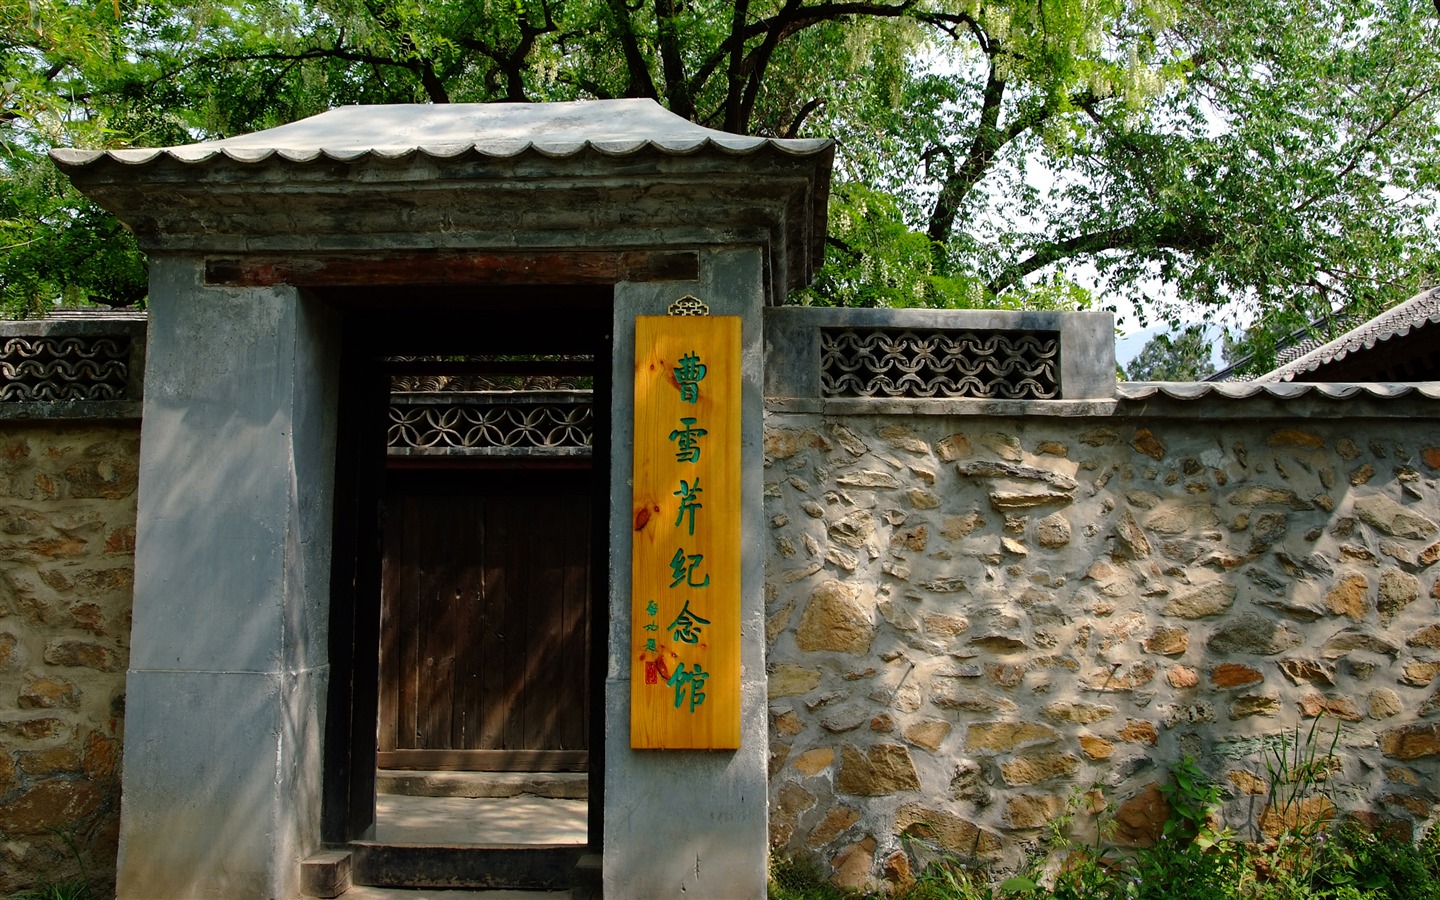 Xiangshan jardín principios del verano (obras barras de refuerzo) #17 - 1440x900